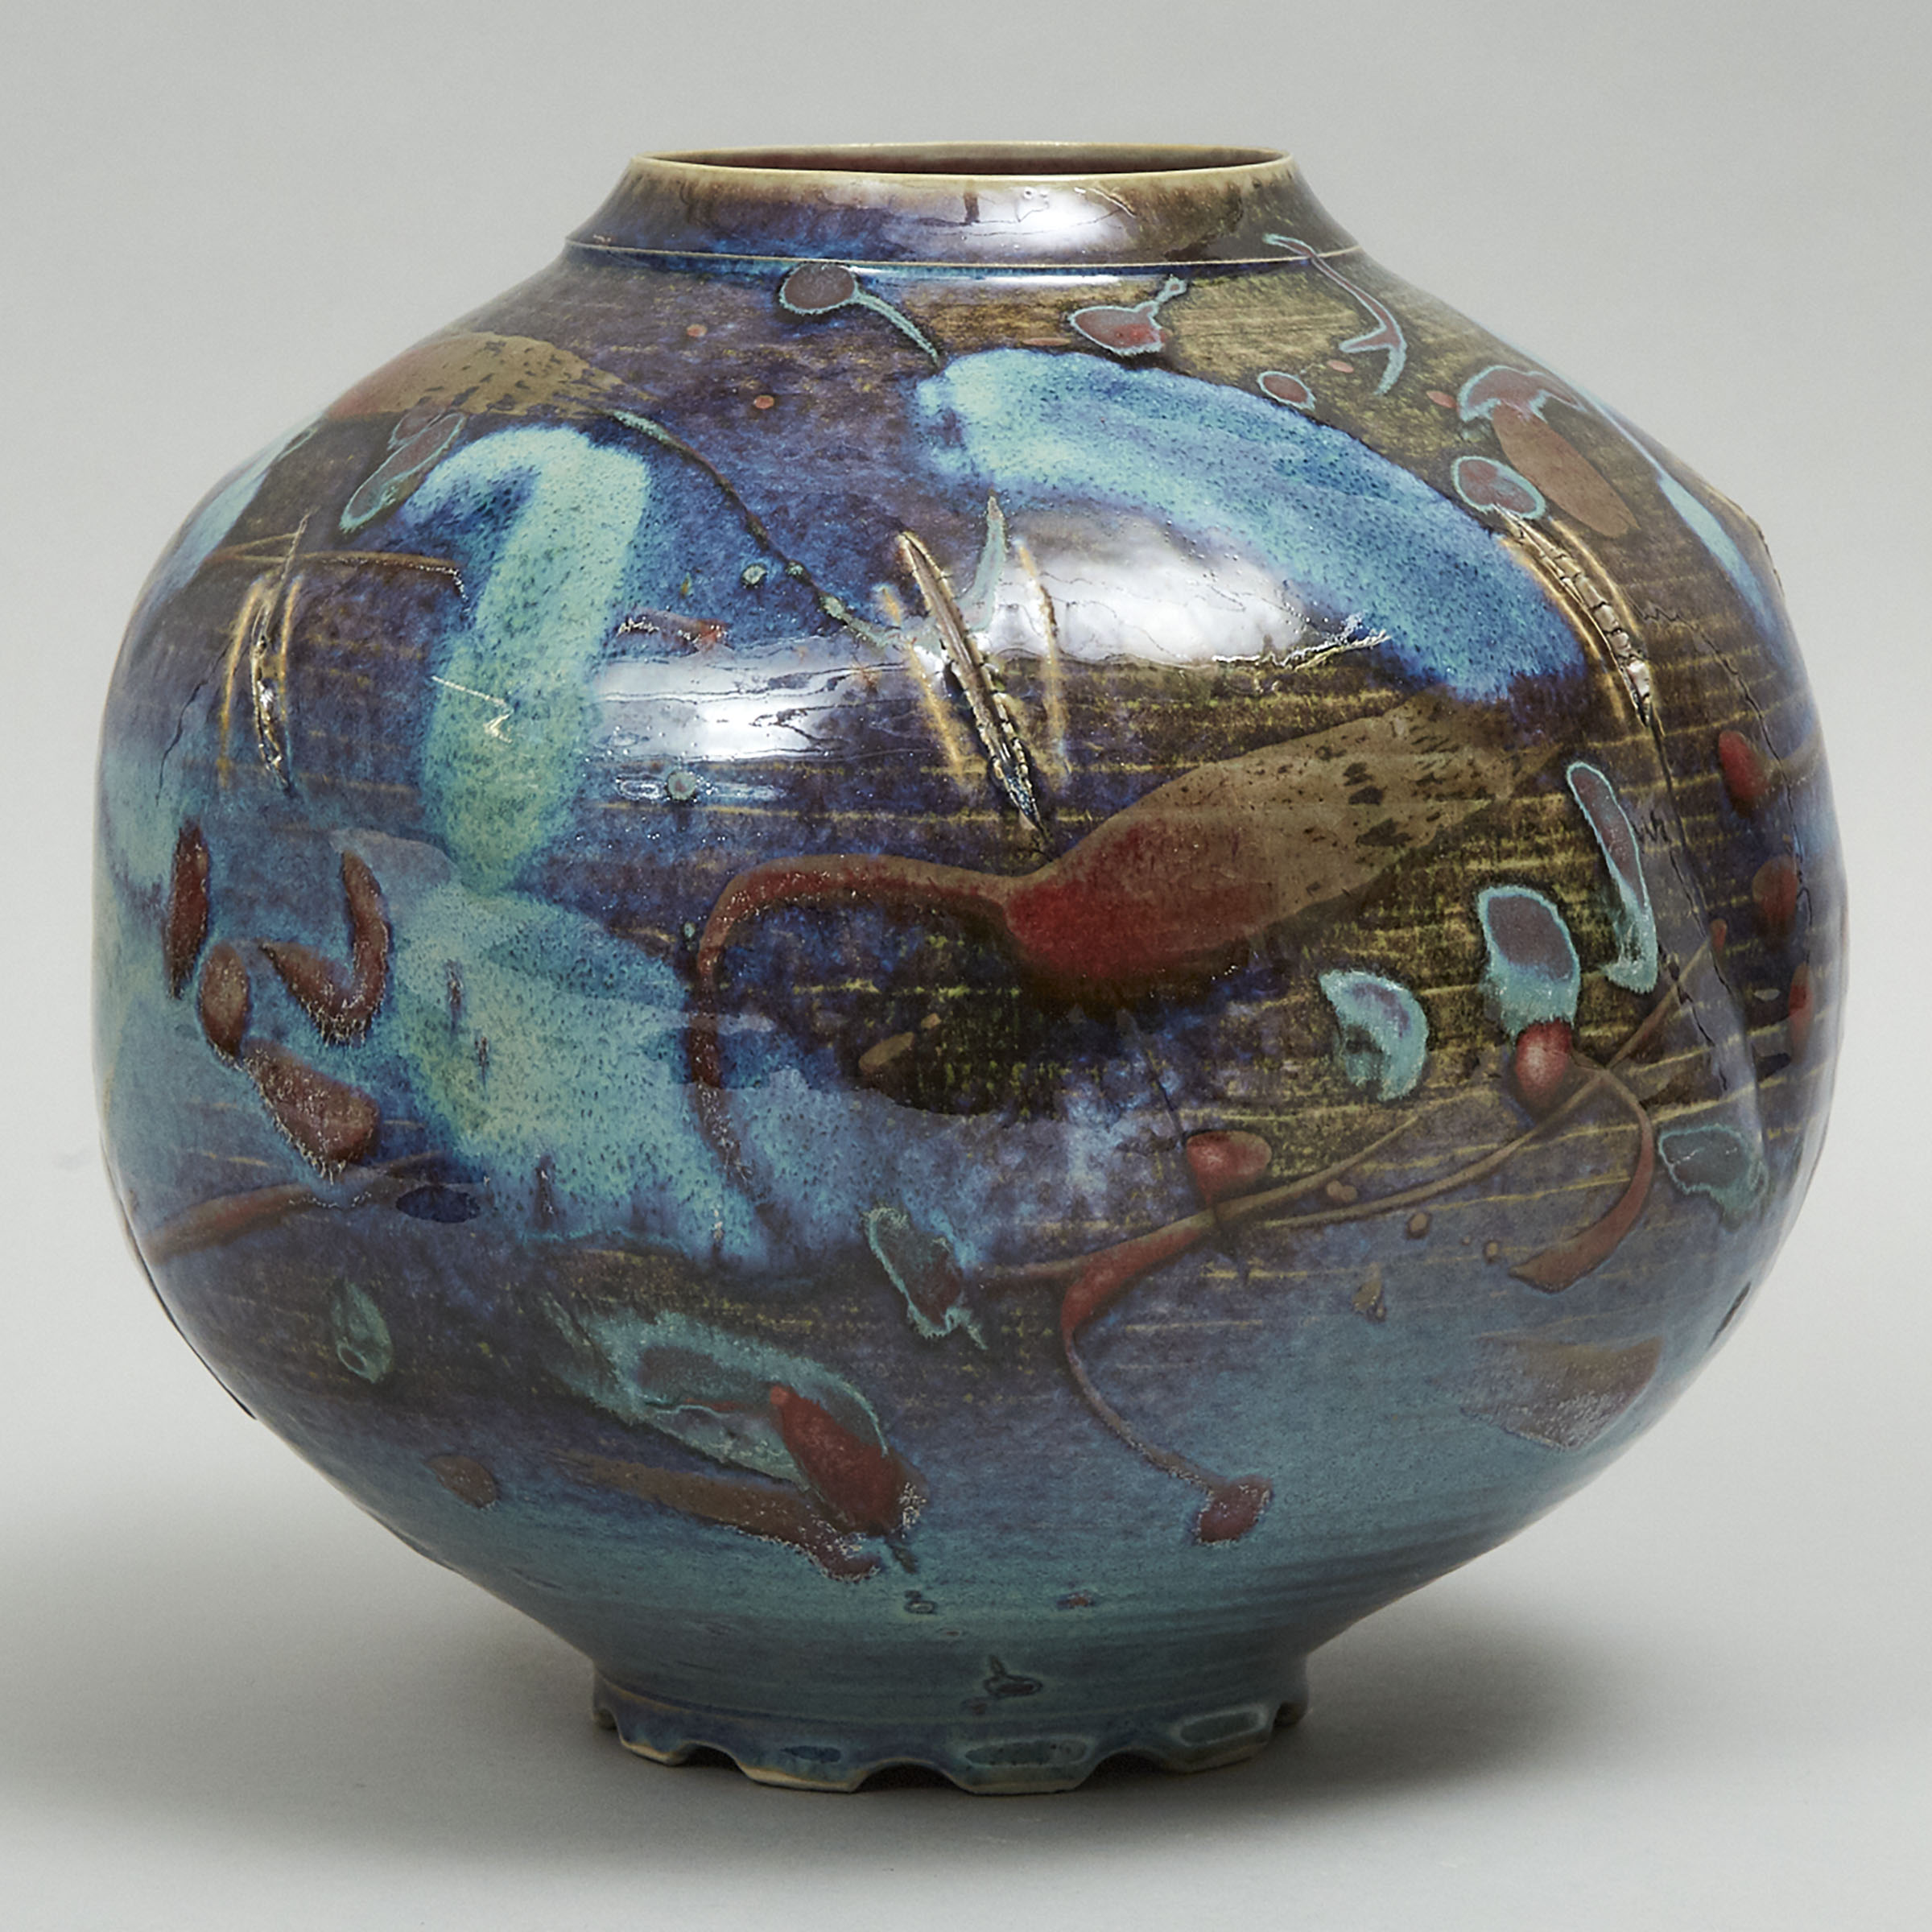 Kayo O'Young (Canadian, b.1950), Glazed Vase, 1987